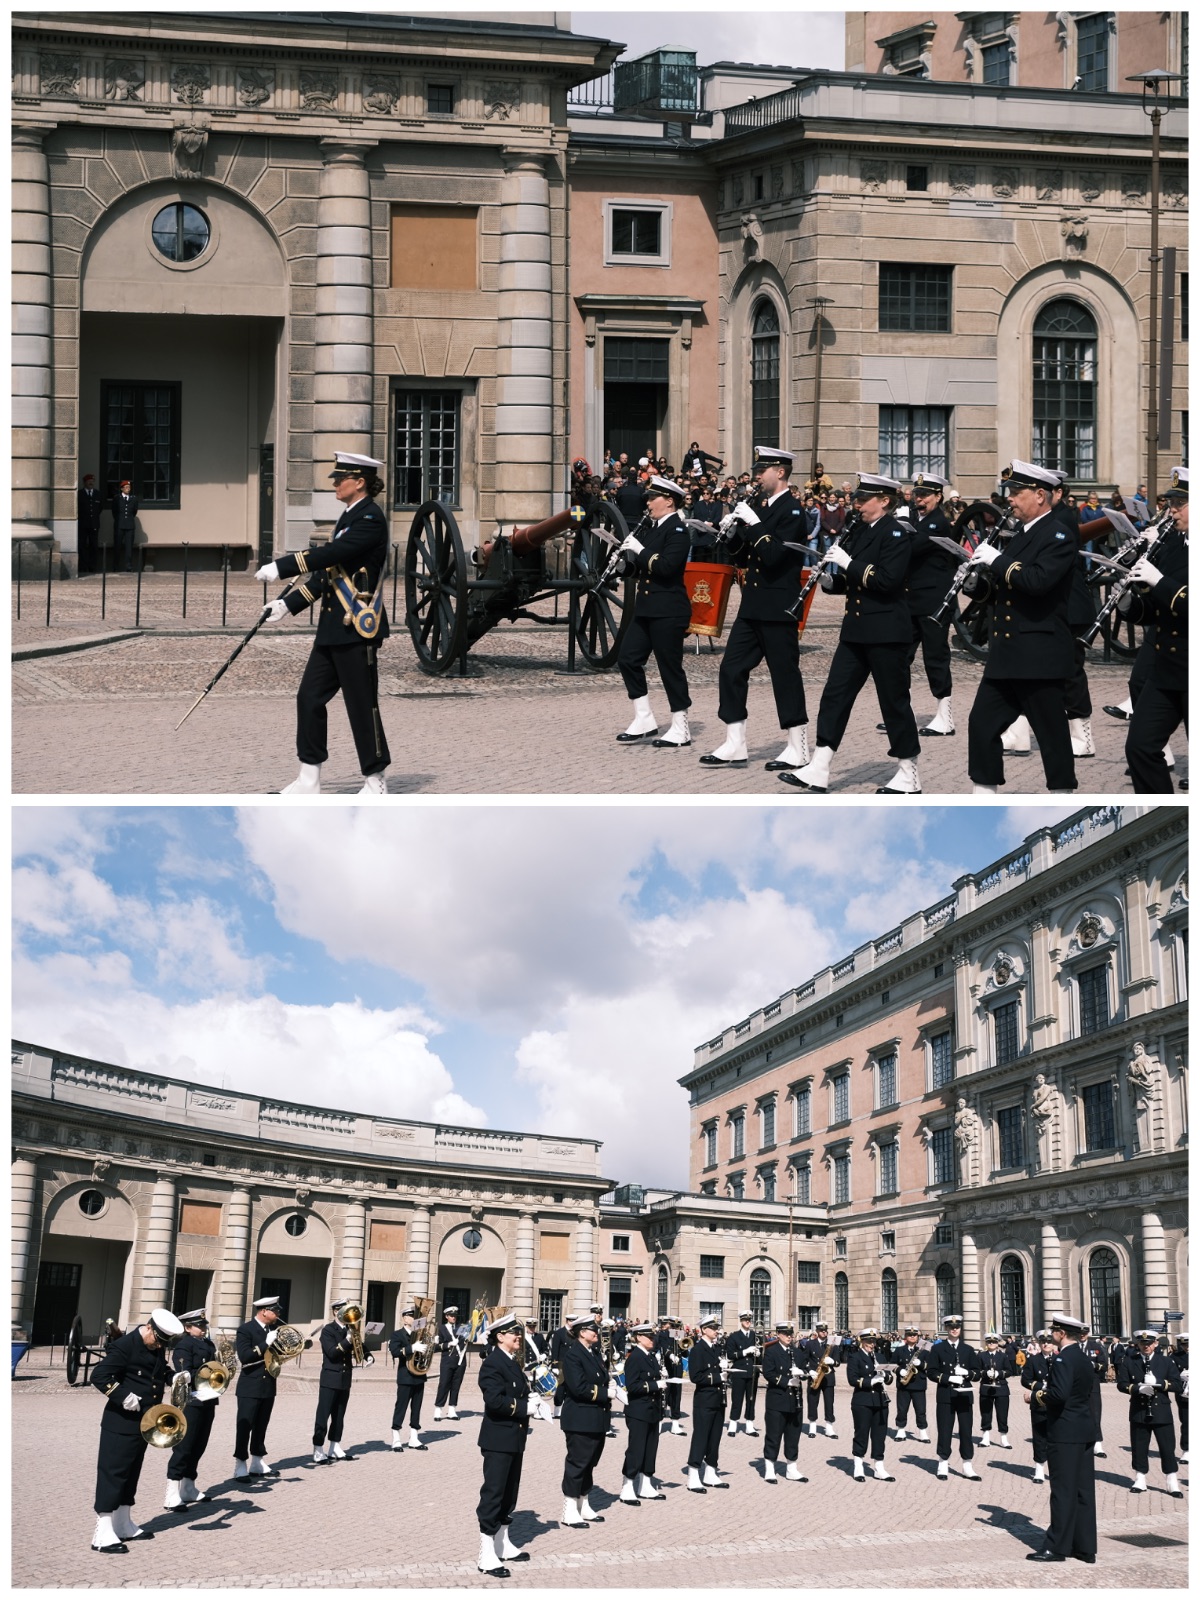 两张图组成的拼图，分别是海军军乐团正在行进中和在广场中央排好队列的样子。